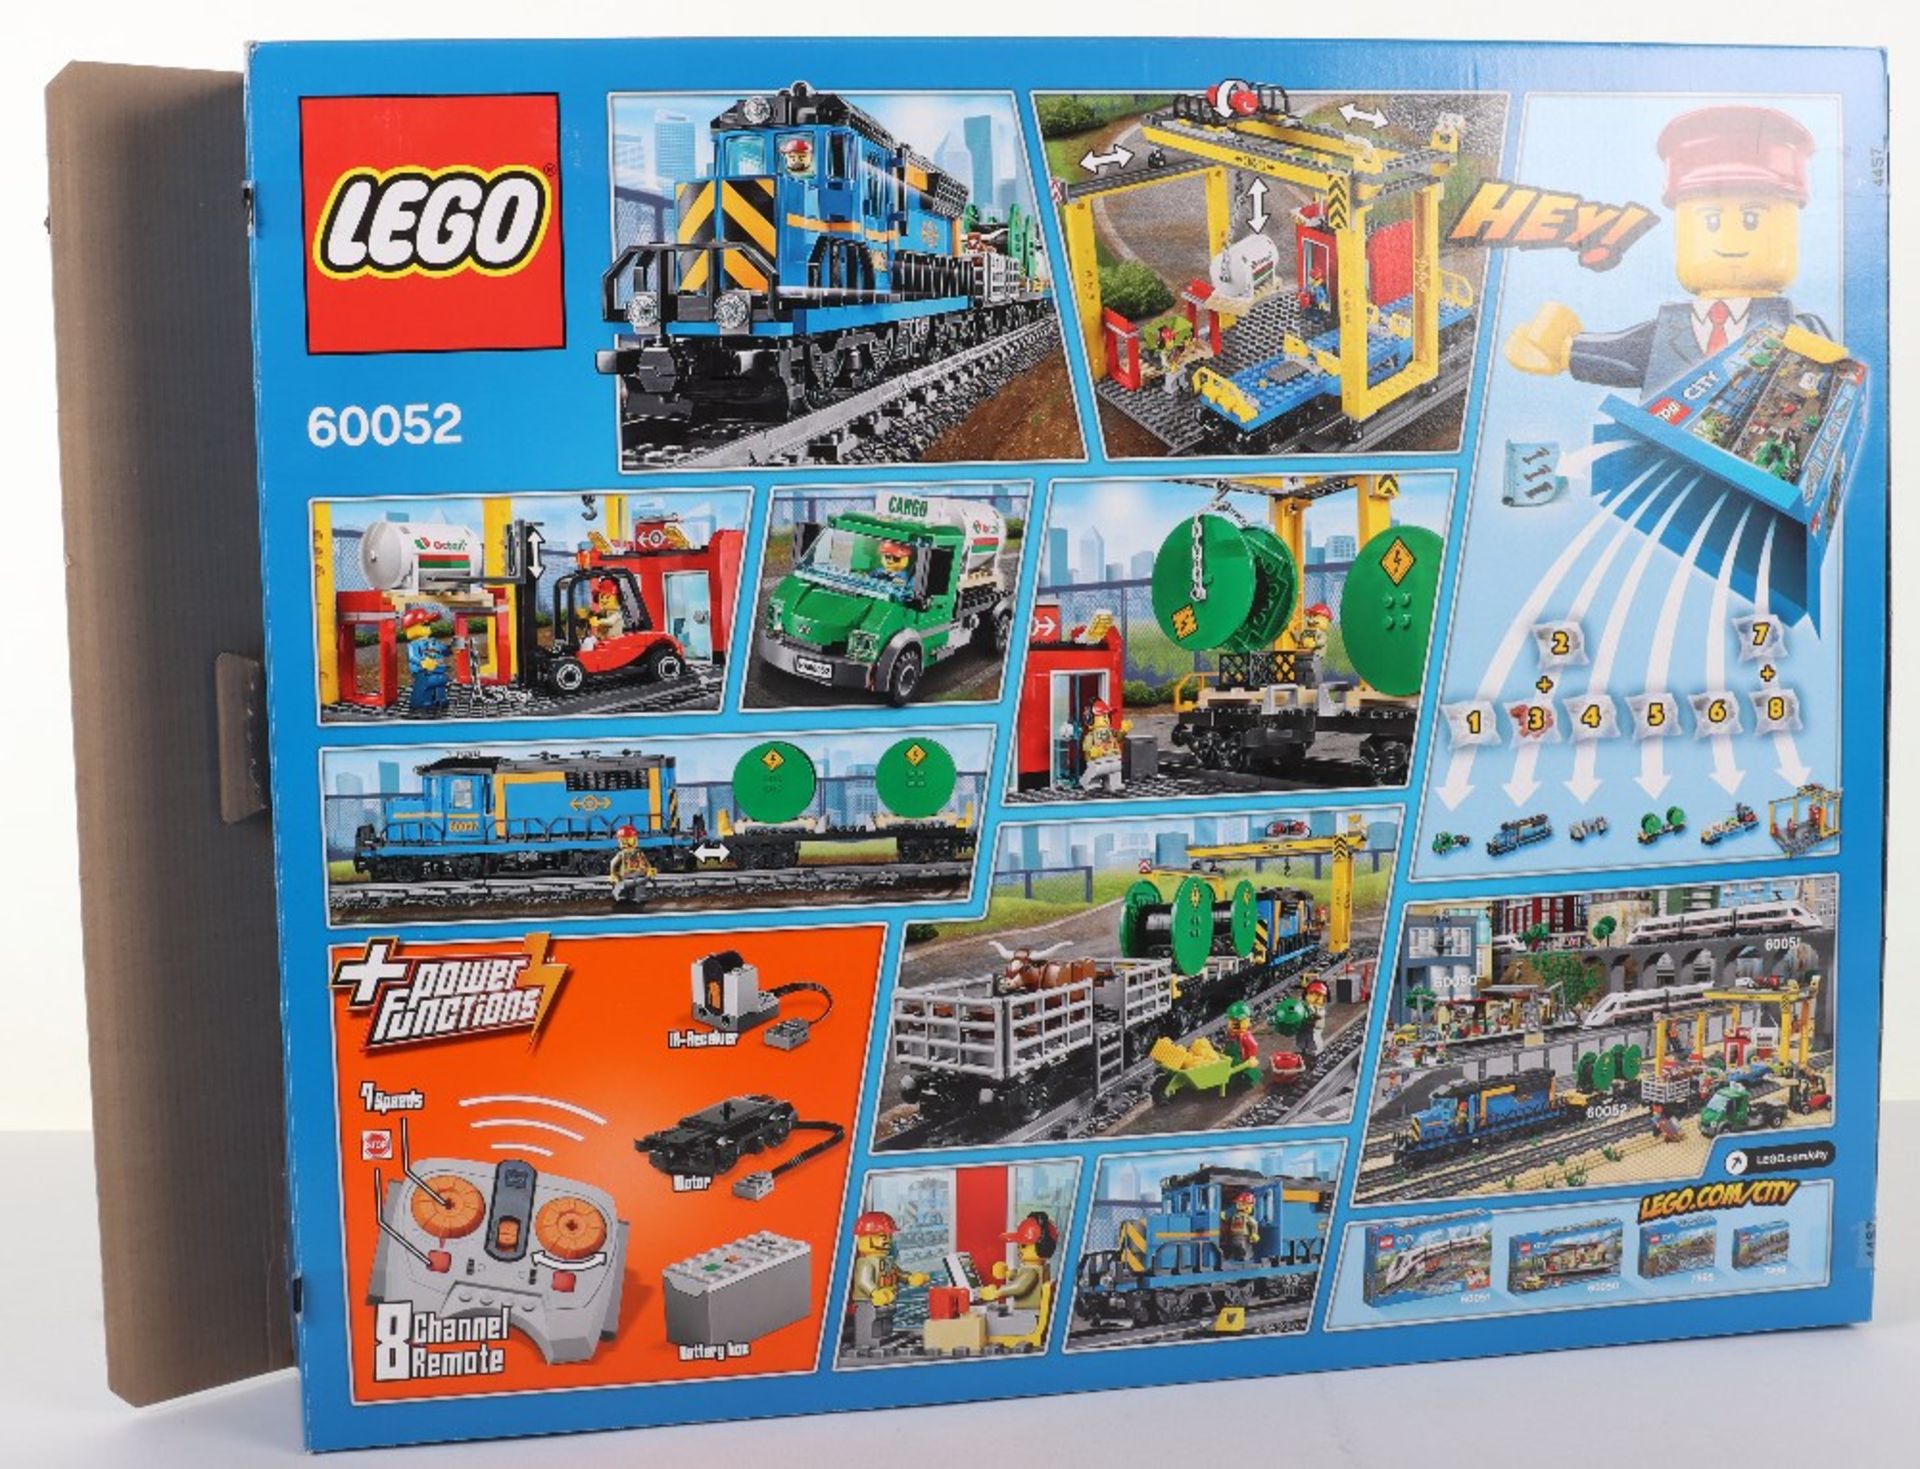 Lego City 60052 “Cargo train” boxed set - Image 2 of 3